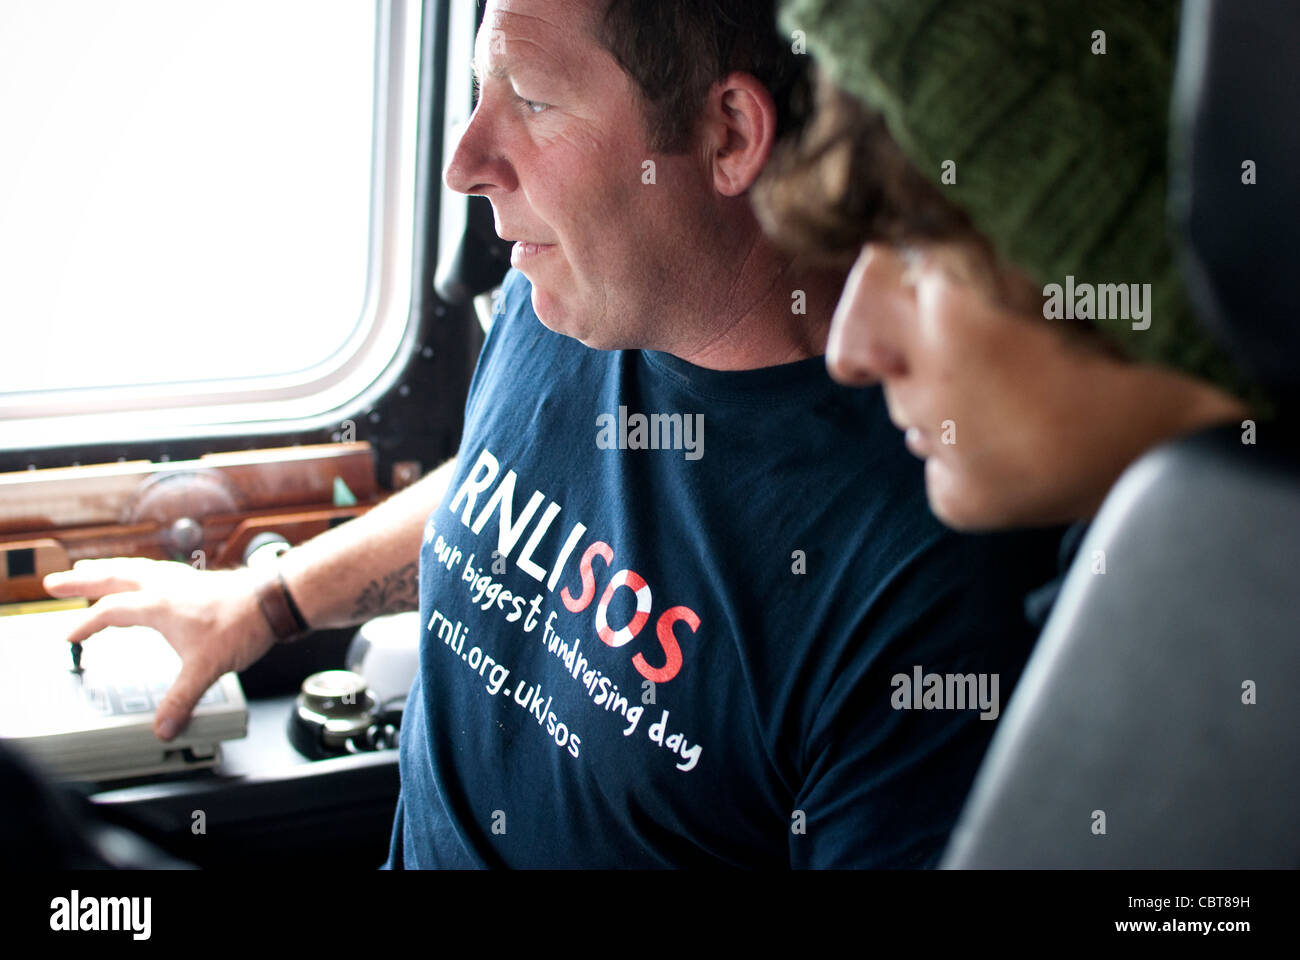 Patch, der Steuermann an das Penlee Rettungsstation zeigt eine Person wie die Steuerung funktioniert. Stockfoto